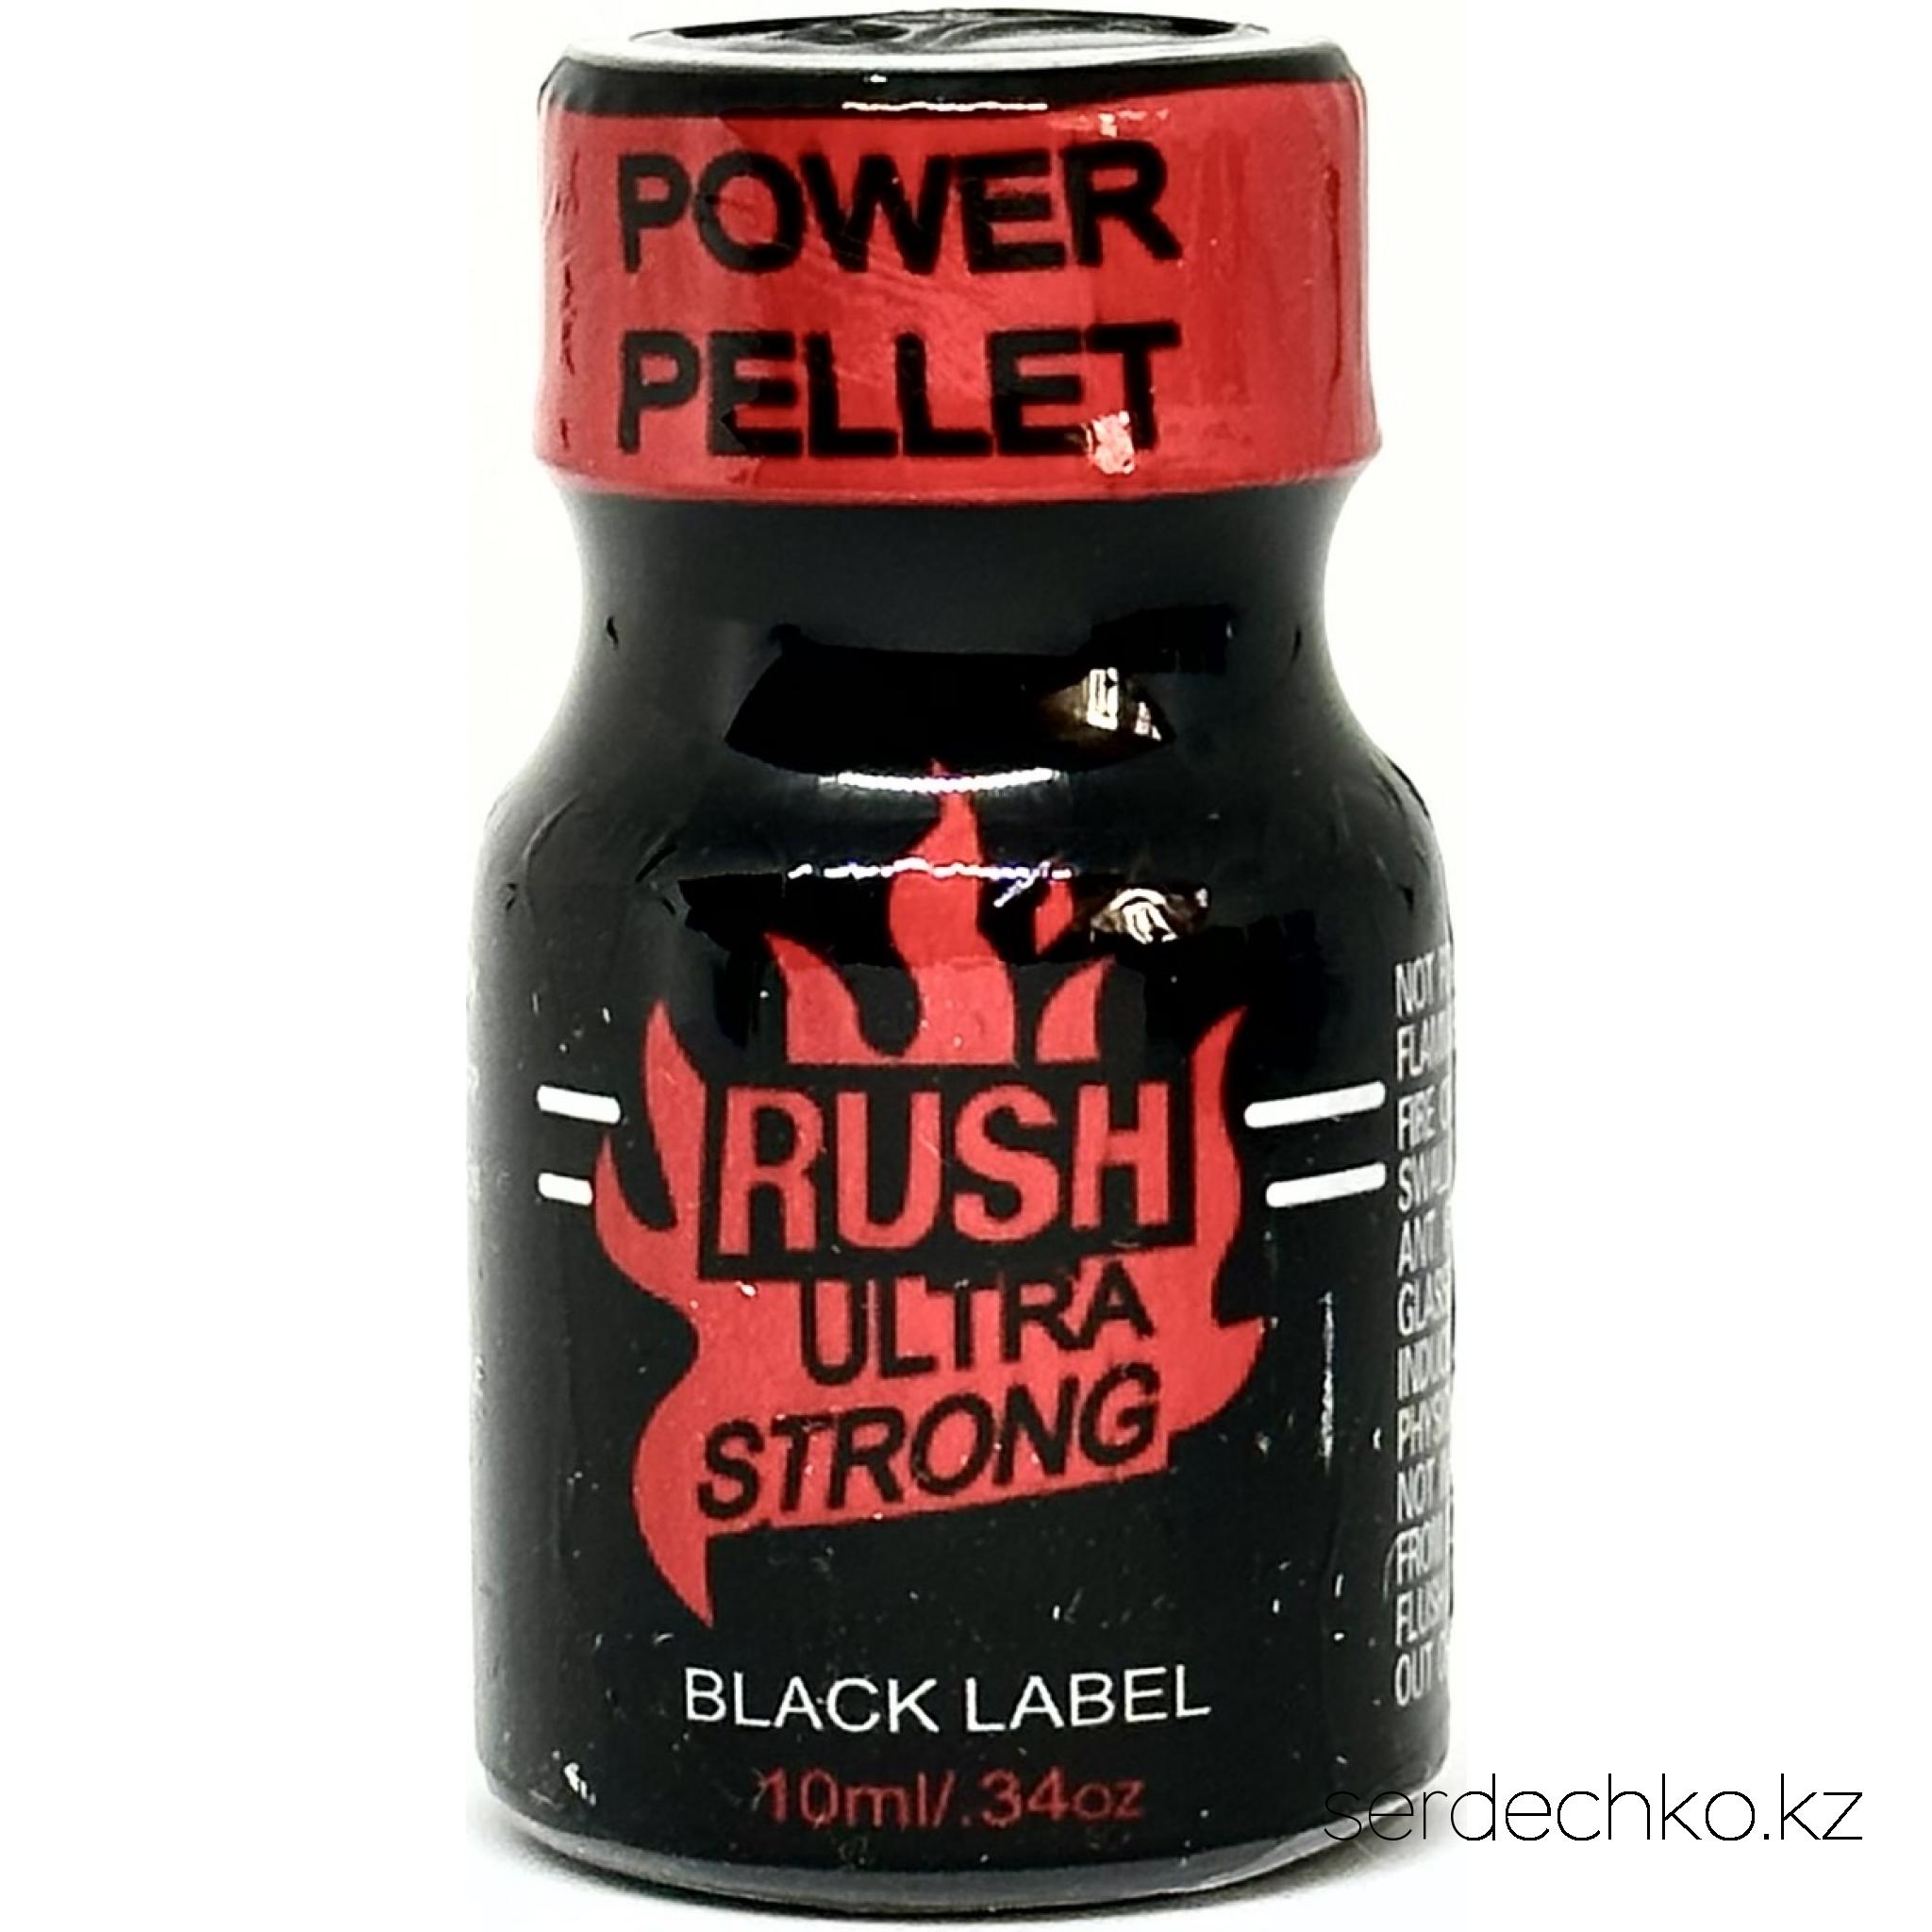 Попперс "RUSH Ultra Strong - Black Label" – 10 мл., 
	Попперс "RUSH Ultra Strong - Black Label" - самый популярный и наверное лучший попперс во всём мире. 

	Попперс "RUSH Ultra Strong - Black Label" был разработан более 50 лет назад, довольно быстро завоевав миллионы поклонников. Если Вы ищете сильных и незабываемых ощущений, то этот попперс то, что Вам нужно.

	 

	Попперсы являются препаратами для стимулирования сексуального возбуждения. Амилнитрит - безопасное вещество, входящее в состав попперса, благодаря ему происходит расслабление мышц тела. Попперсы являются сильнейшим афродизиаком и для мужчин, и для женщин.

	Действие попперса:

	 - усиливает тактильные ощущения;

	 - дарит чувство расслабления, успокоение и релаксацию;

	 - заряд сексуальной мощи;

	 - снимает  психическое и физическое напряжение;

	 - убирает психологические барьеры;

	 - в одинаковой степени приносит удовольствие и мужчинам, и женщинам.

	 - усиливает и продлевает оргазм.

	Инструкция по применению:

	Поставьте открытый флакон в помещении, путем испарения летучих веществ попперса, воздух в комнате наполнится интенсивно пахнущим благоуханием. Так же можно вылить часть содержимого из флакона на блюдце для увеличения площади испарения. Действие попперса ощущается примерно через 10-15 минут после наполнения комнаты ароматом.

	Также можно вдыхать носом из бутылочки или через специальную маску-ингалятор;

	Одной бутылочкой на 10 мл, как правило, можно использоваться до 1 месяца (применяя 3-4 раза в неделю). Одной бутылочки хватает примерно на 200 вдыханий.

	После использования производители не рекомендуют садиться сразу же за руль автомобиля. Следует немного подождать или выпить большое количество тёплой воды.

	Противопоказания:

	 - НЕЛЬЗЯ принимать внутрь;

	 - не применять попперсы людям страдающим сердечно-сосудистой недостаточностью, гипертонией, анемией, глаукомой;

	  - не принимать с другими секс-стимуляторами, такими как циалис, виагра и т.д.;

	  - не принимать беременным, кормящим;

	 - не принимать лицам до 18лет;

	 - не  наносить попперсы на участки кожи или слизистую оболочку, из-за опасности ожогов;

	 - не оставлять под прямыми солнечными лучами;

	 - не нагревать и беречь от контакта с огнем, т.к. содержатся легковоспламеняющиеся вещества.

	Условия хранения:

	Попперс должен хранится при особых условиях. Прохладное темное место, такое как холодильник, обеспечит ему сохранность до 5 лет, при вскрытой бутылочке препарат продержится несколько недель. Температура должна быть в пределах +3°C. Закрытым и открытым баночкам необходимо обеспечить одинаковое условие хранения, поэтому стоит их хранить вместе. Если вы хотите воспользоваться попперсом и только вынули его их холодильника, то не спешите открывать, чтобы не возник конденсат на стенках флакона, он должен согреться до комнатной температуры (не нагревать самостоятельно).
